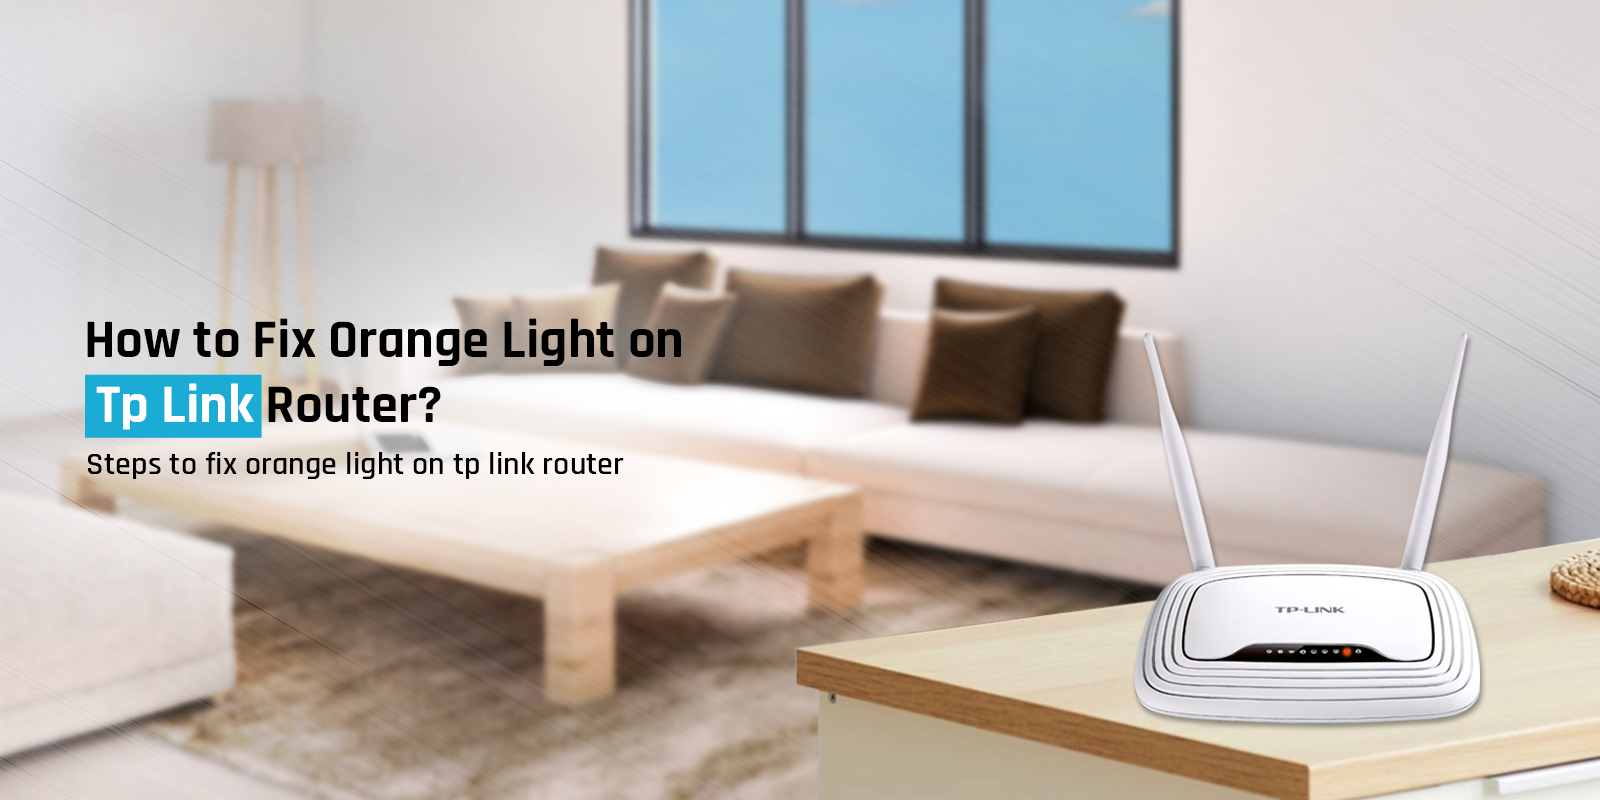 Tp link router orange light - How to Fix Orange Light on Tp Link Router